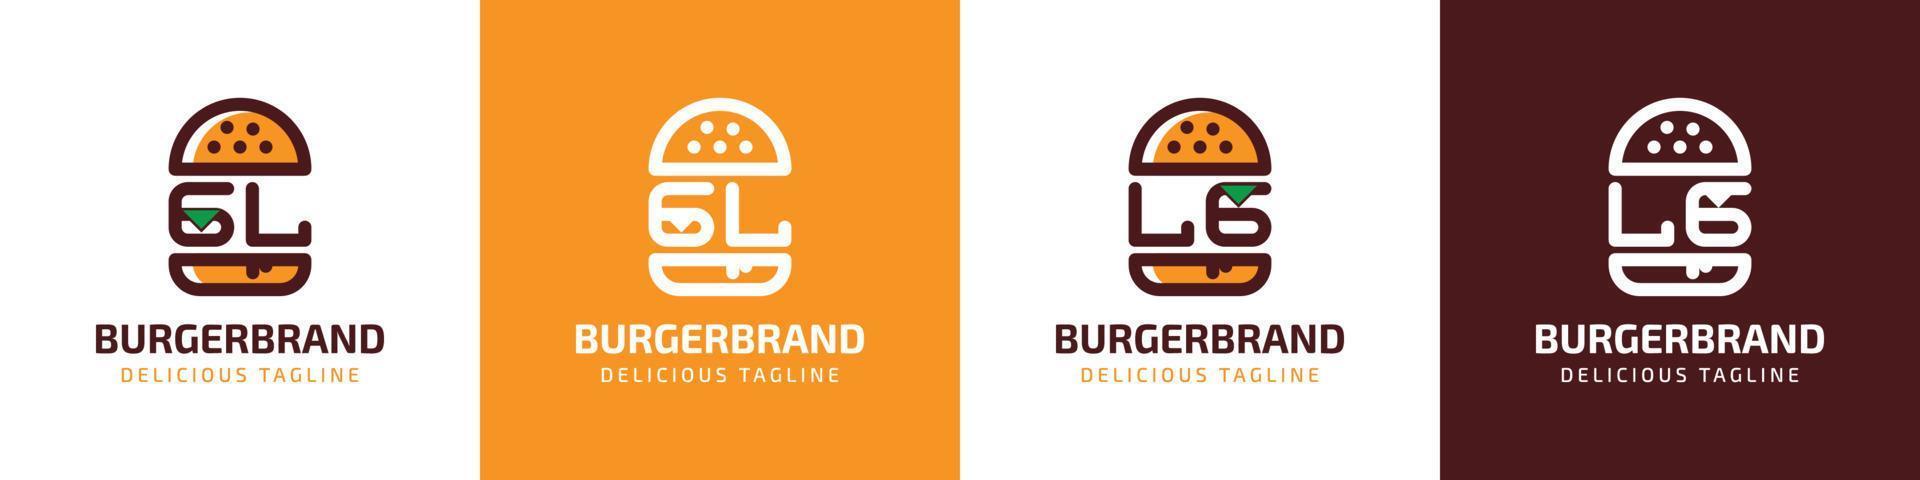 letra gl y lg hamburguesa logo, adecuado para ninguna negocio relacionado a hamburguesa con gl o lg iniciales. vector